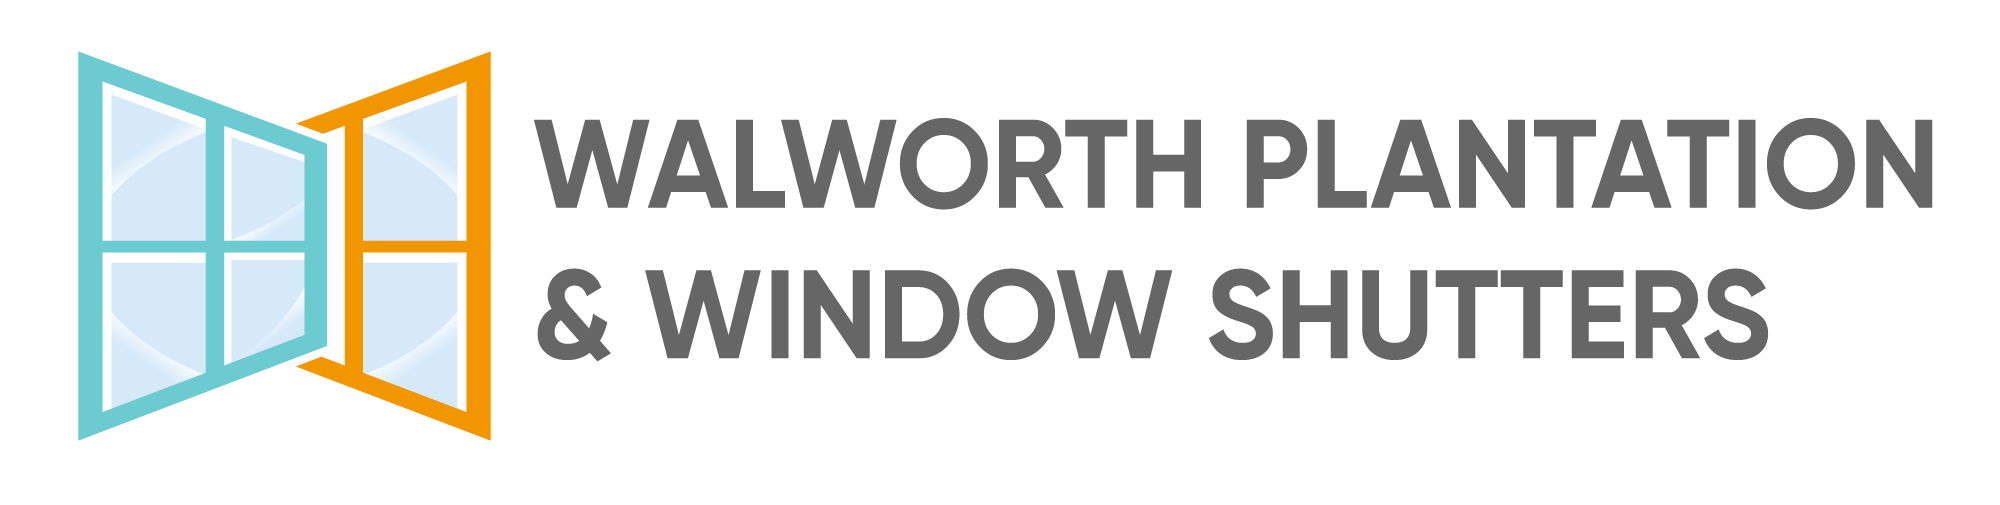 Walworth Plantation & Window Shutters